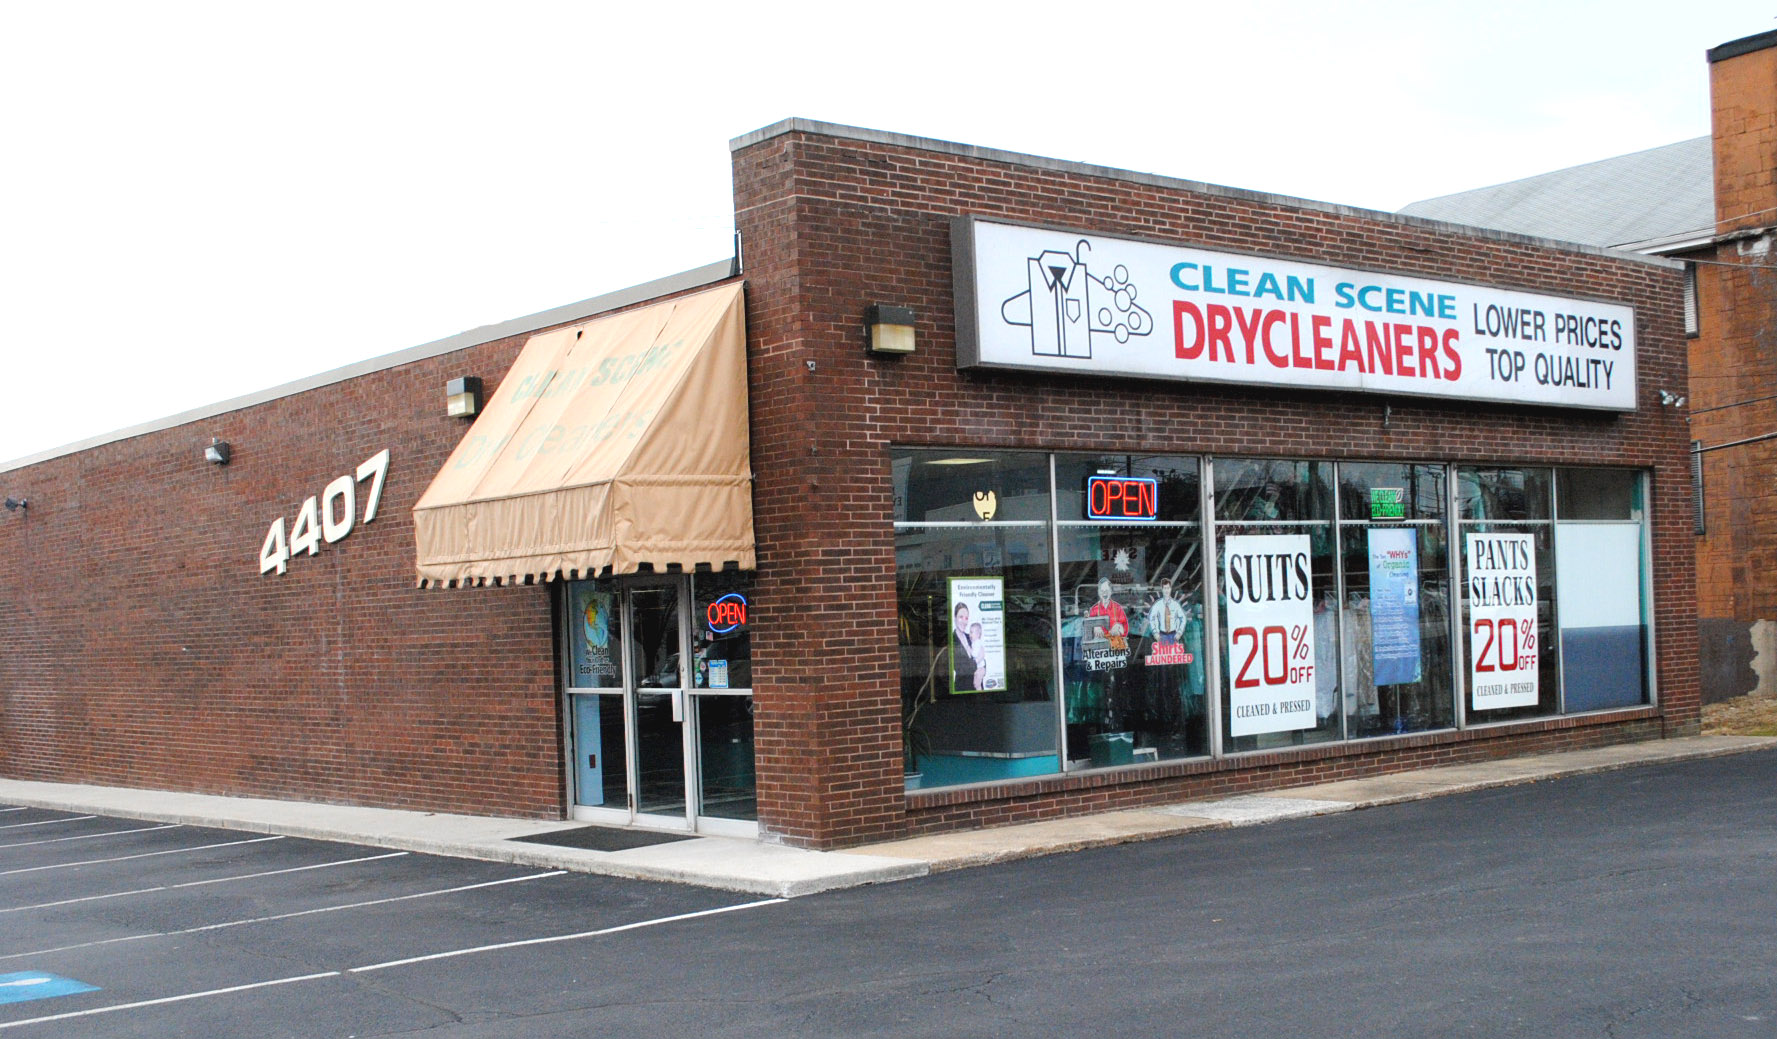 Highmark store carlisle pike caresource address for submitting claims dayton ohio